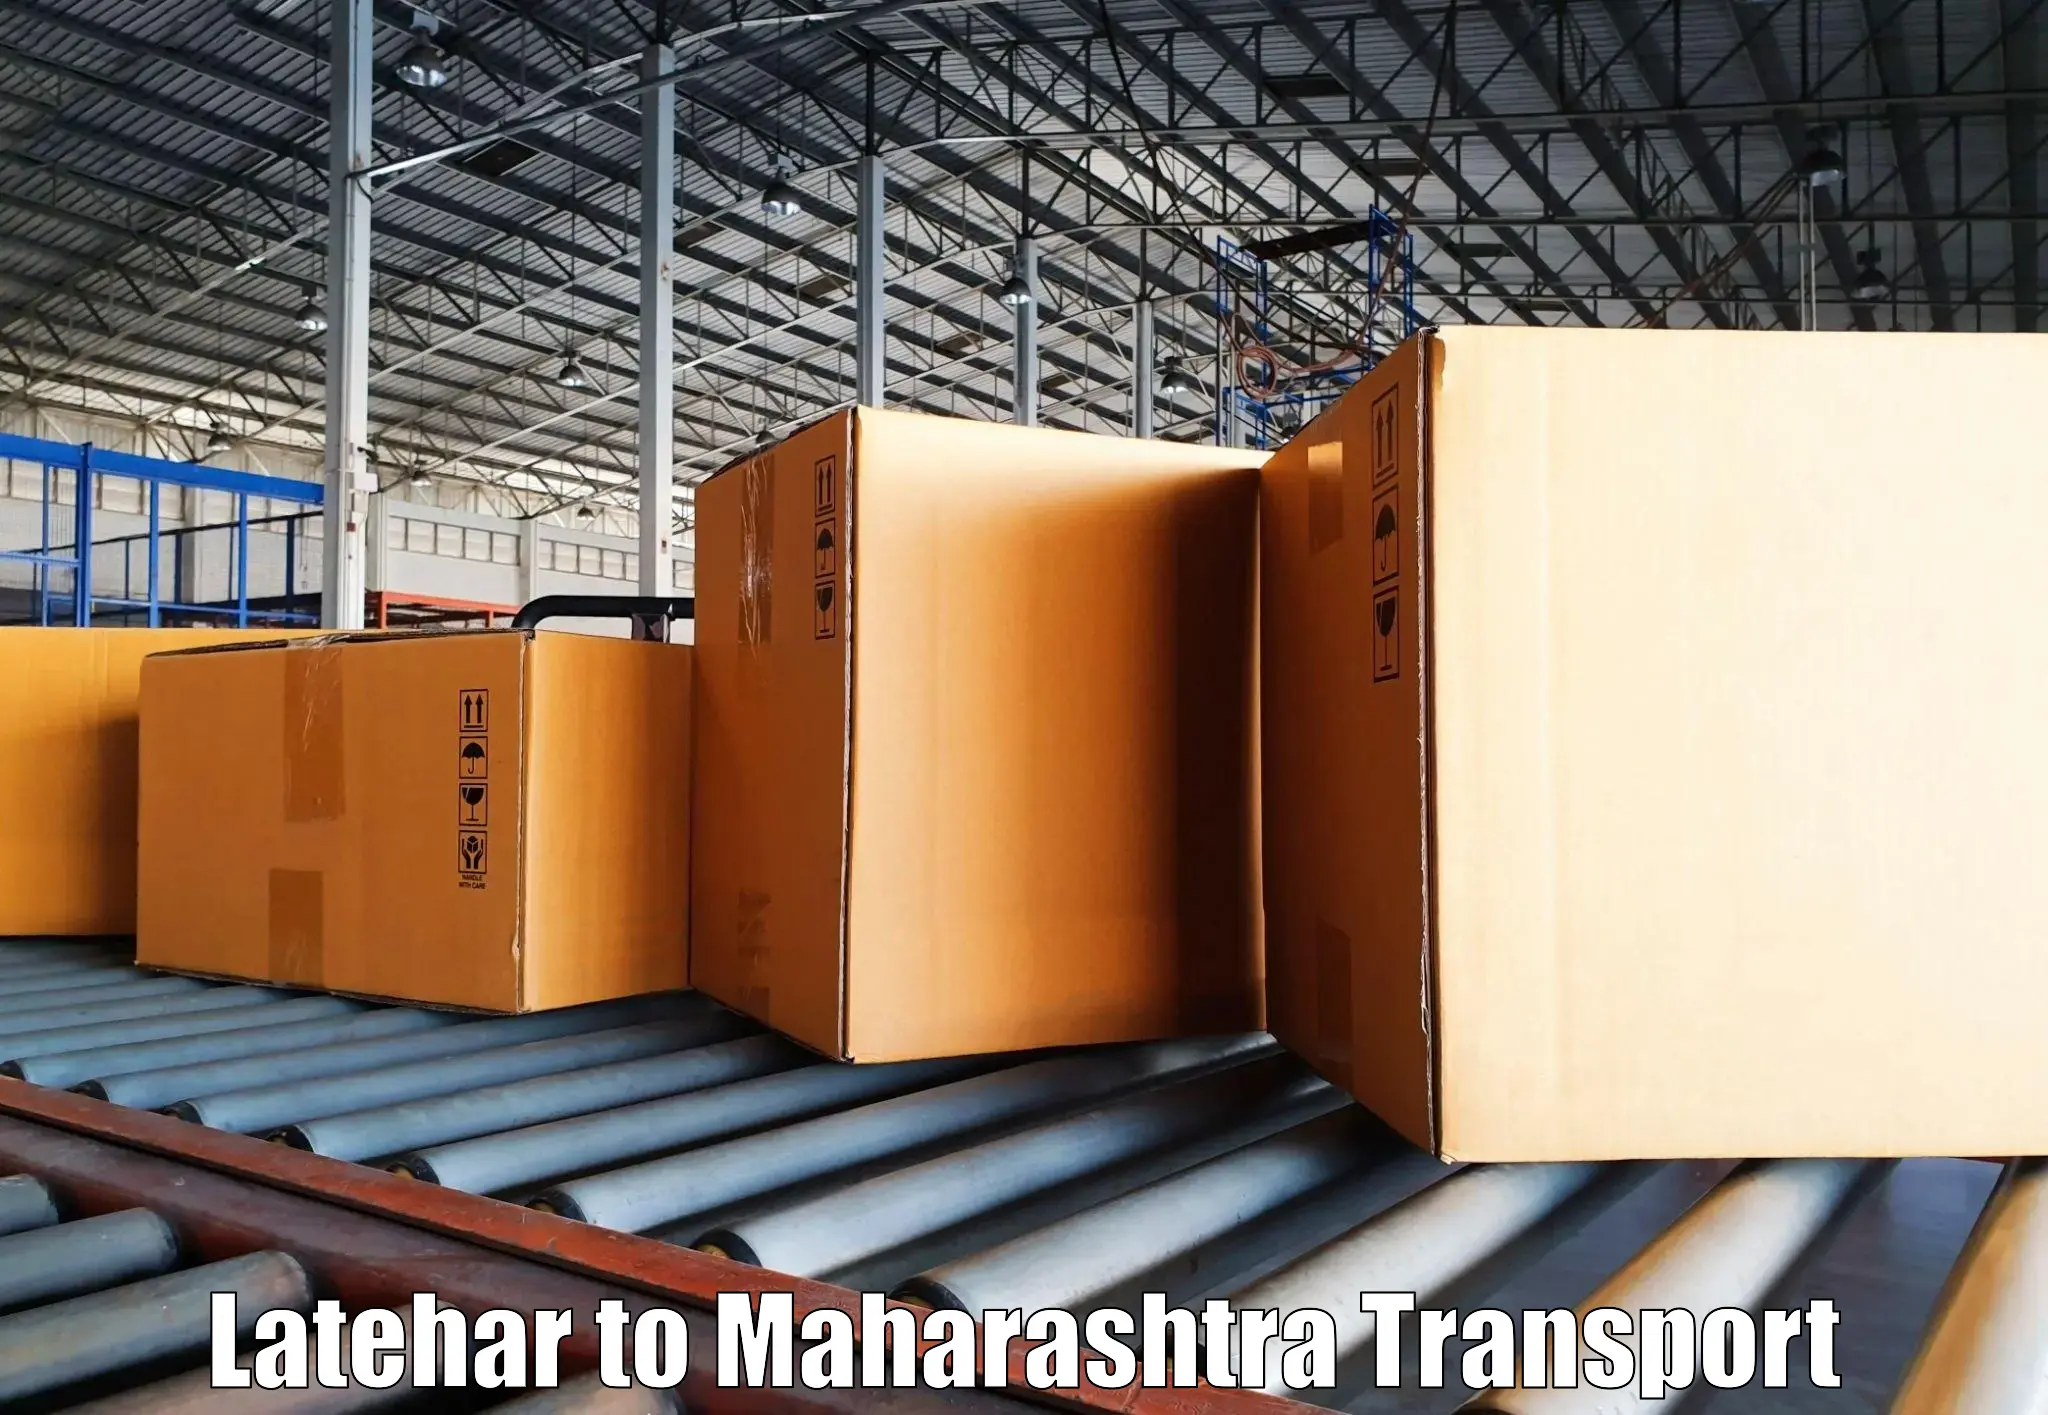 Furniture transport service Latehar to Savitribai Phule Pune University